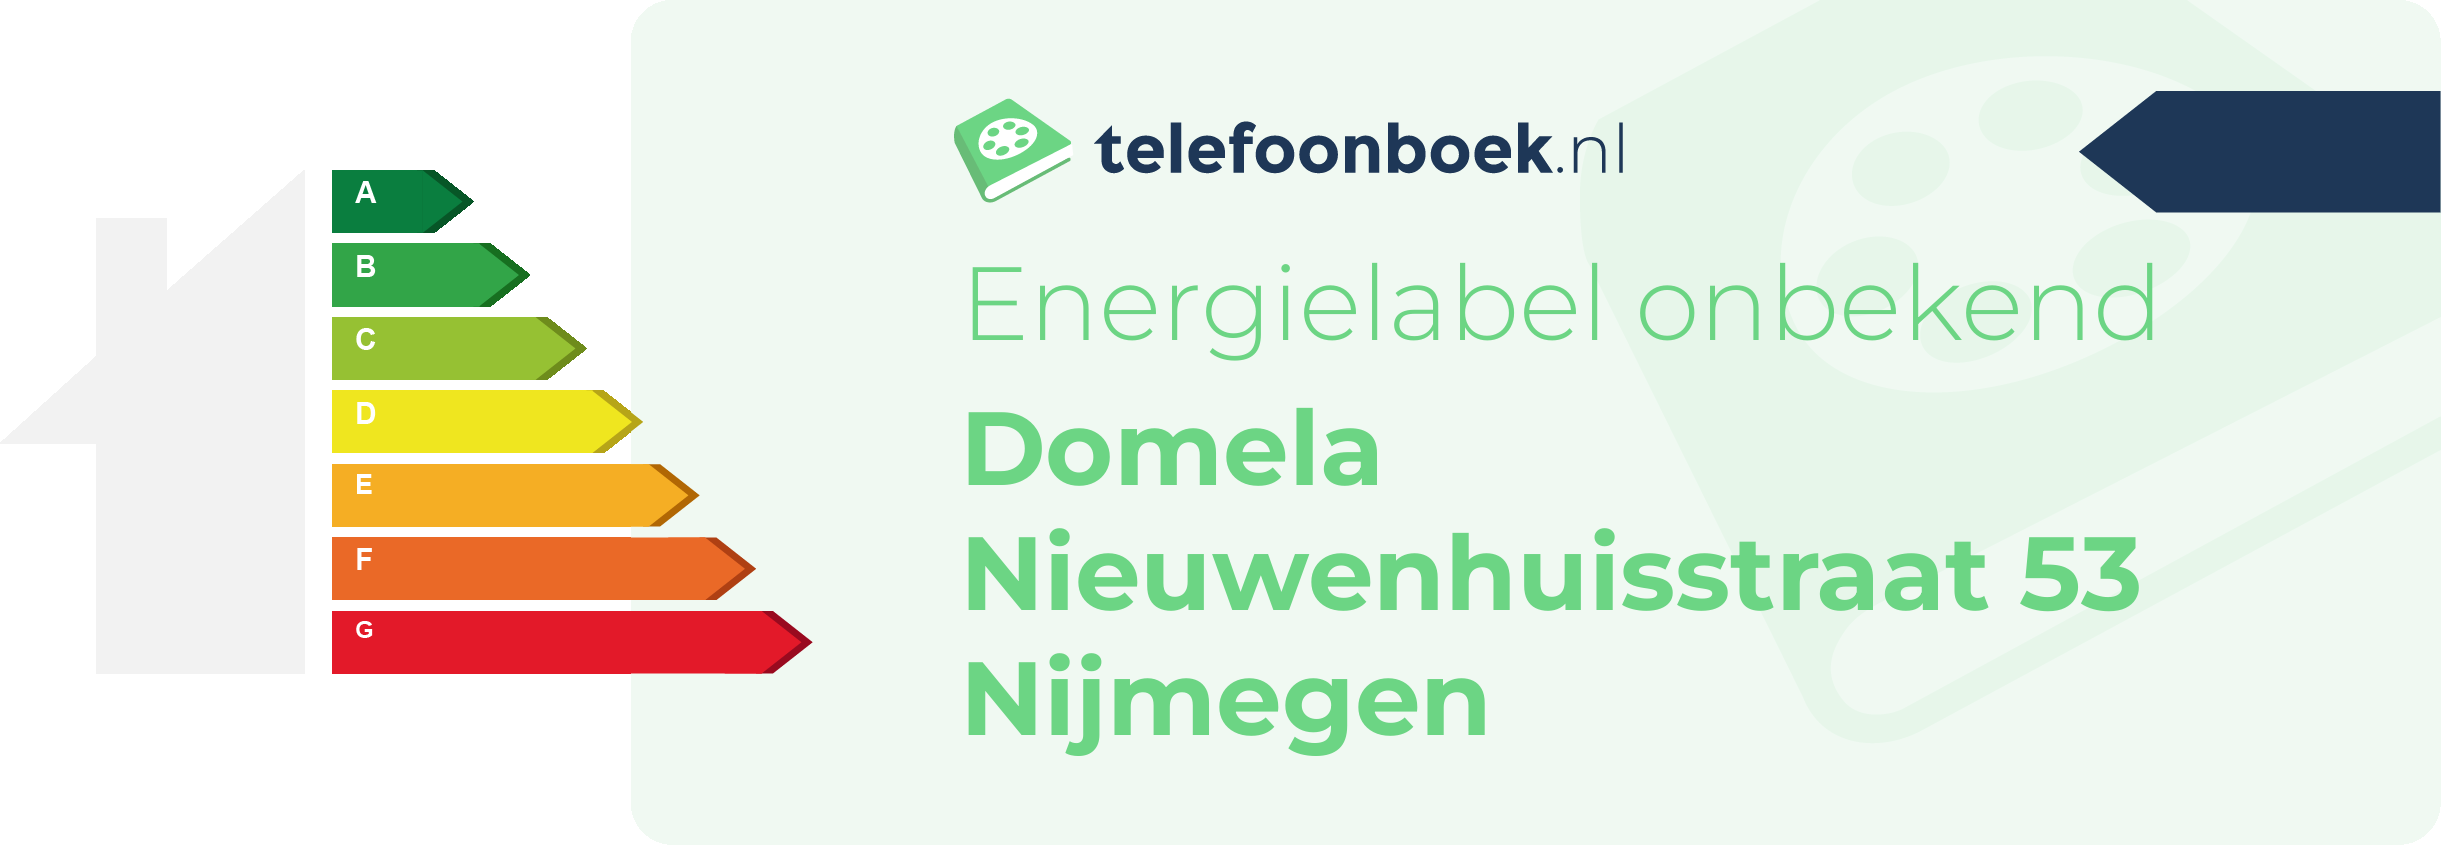 Energielabel Domela Nieuwenhuisstraat 53 Nijmegen